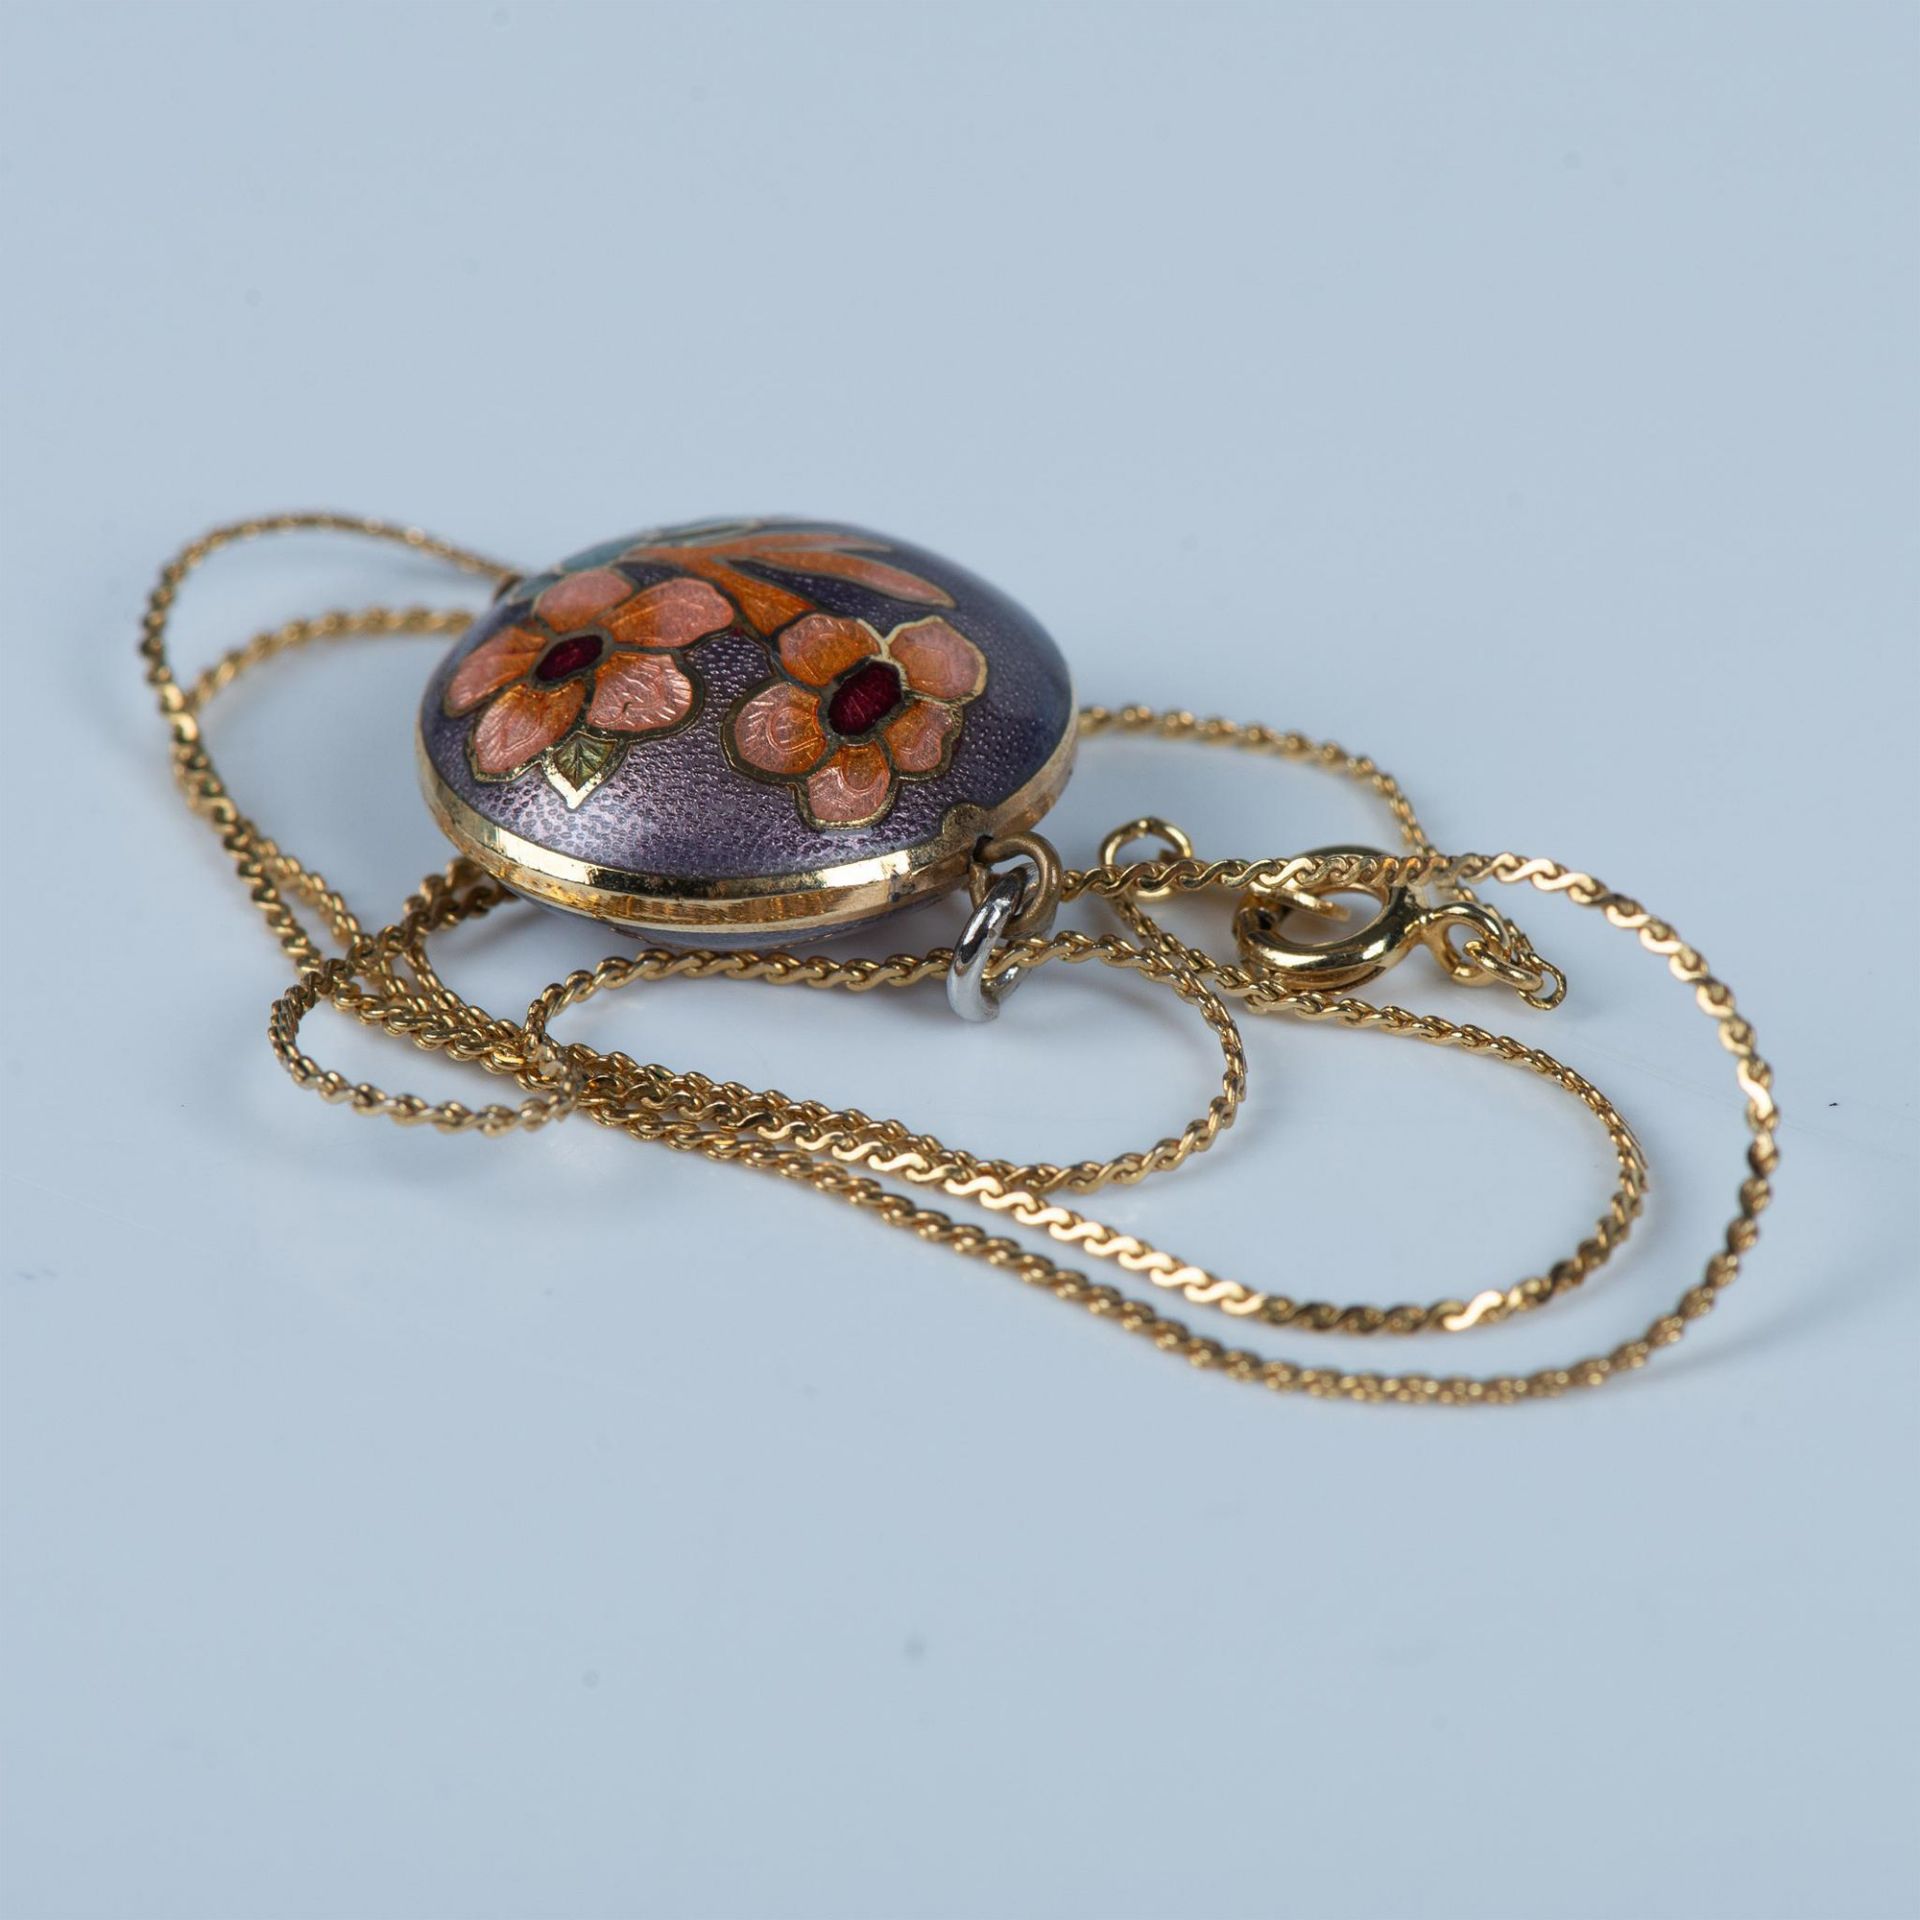 Vintage Delicate Cloisonne Flower Necklace - Image 4 of 4